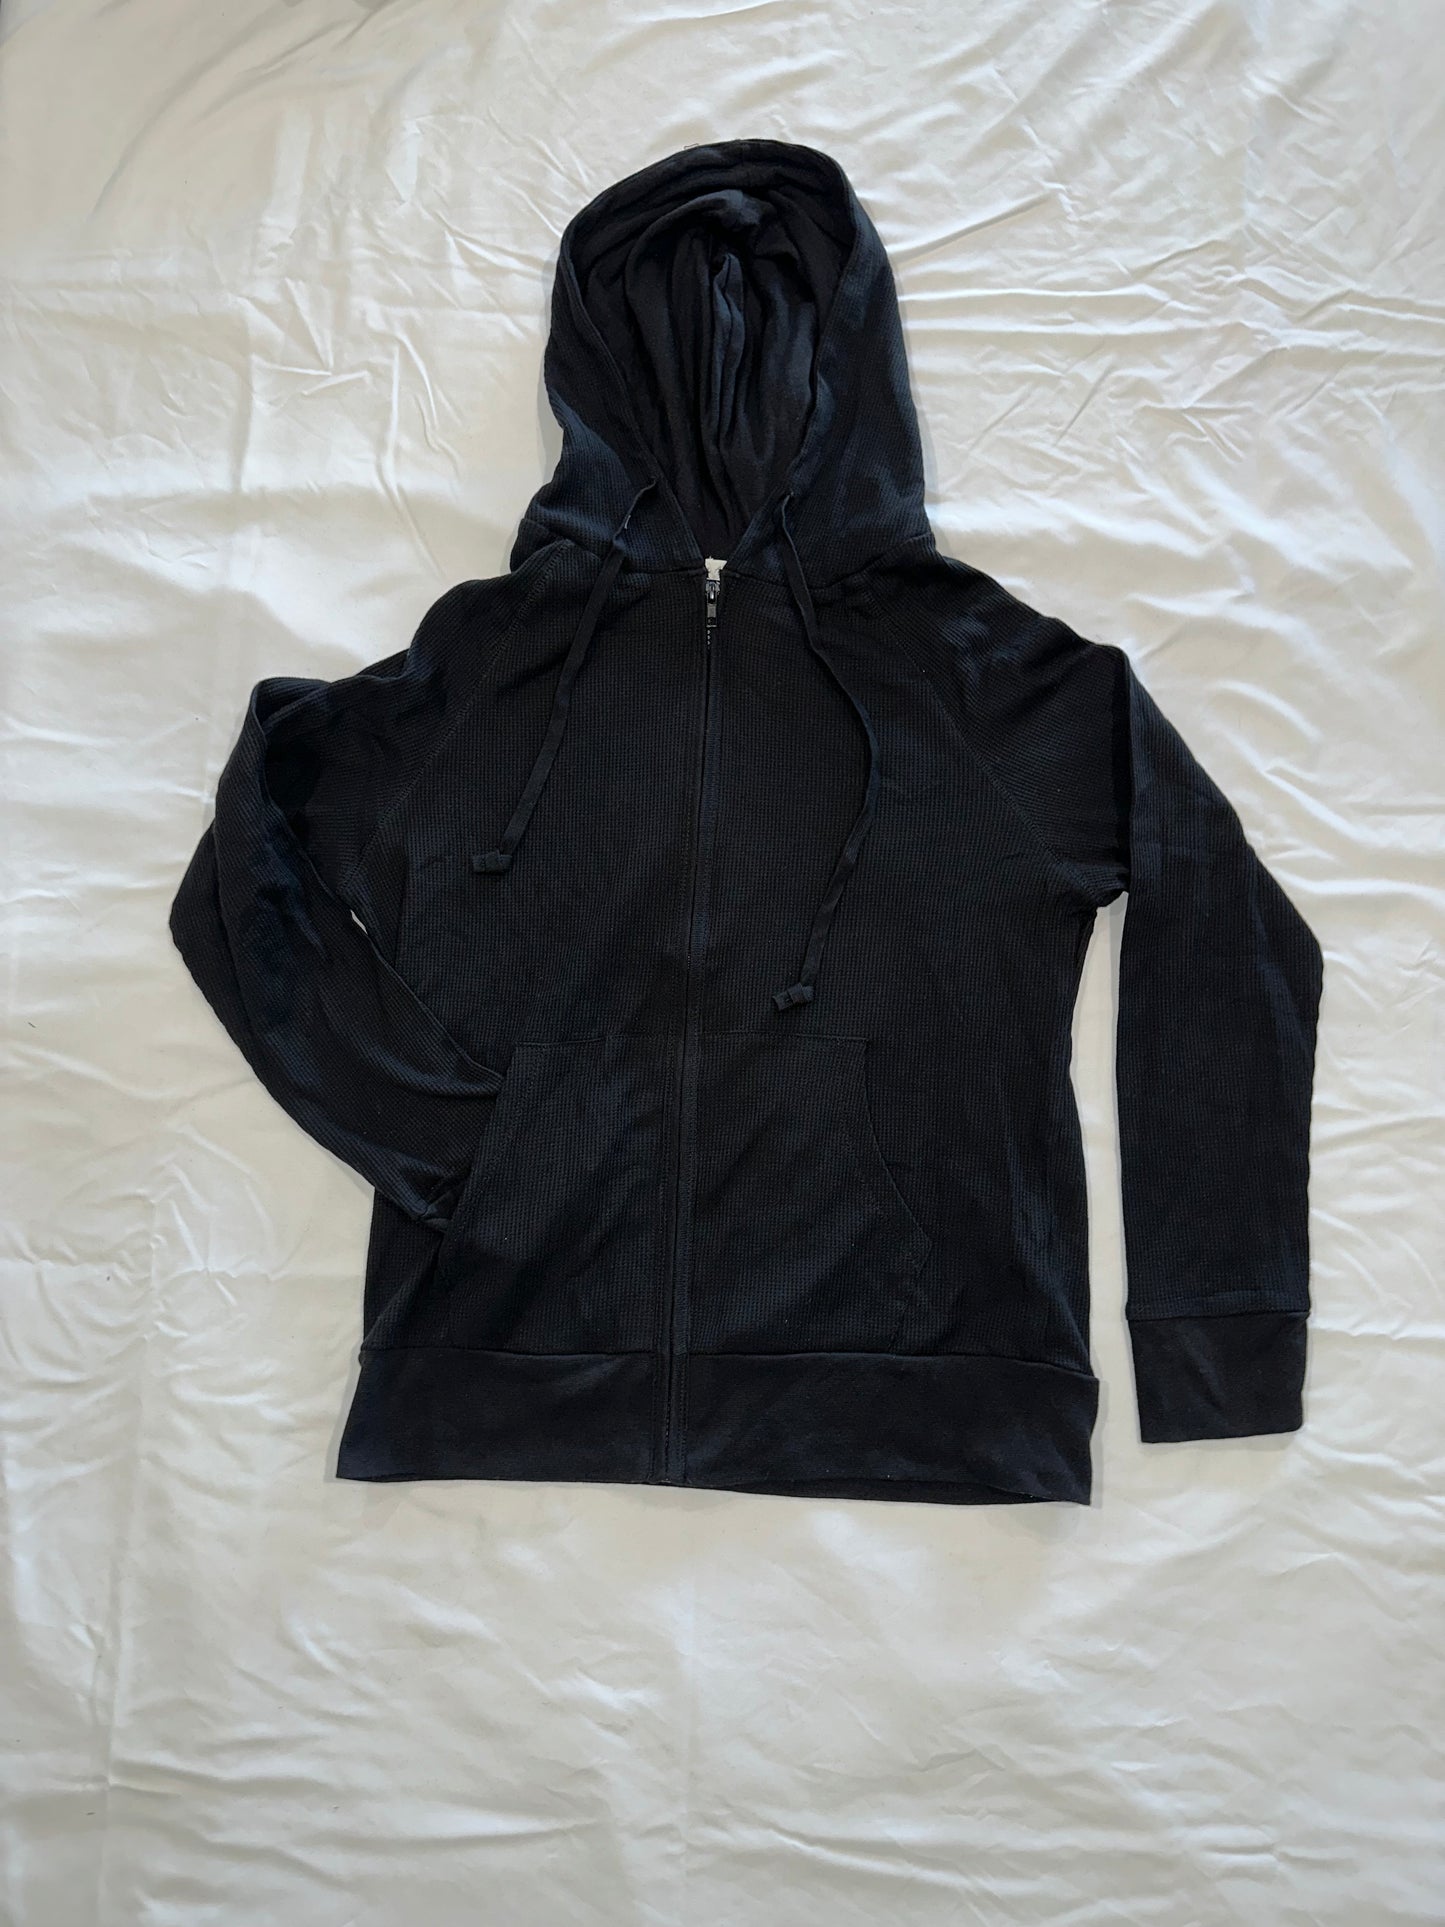 Black Thermal Zip Up Jacket Bling "CALI" Block Letter Design